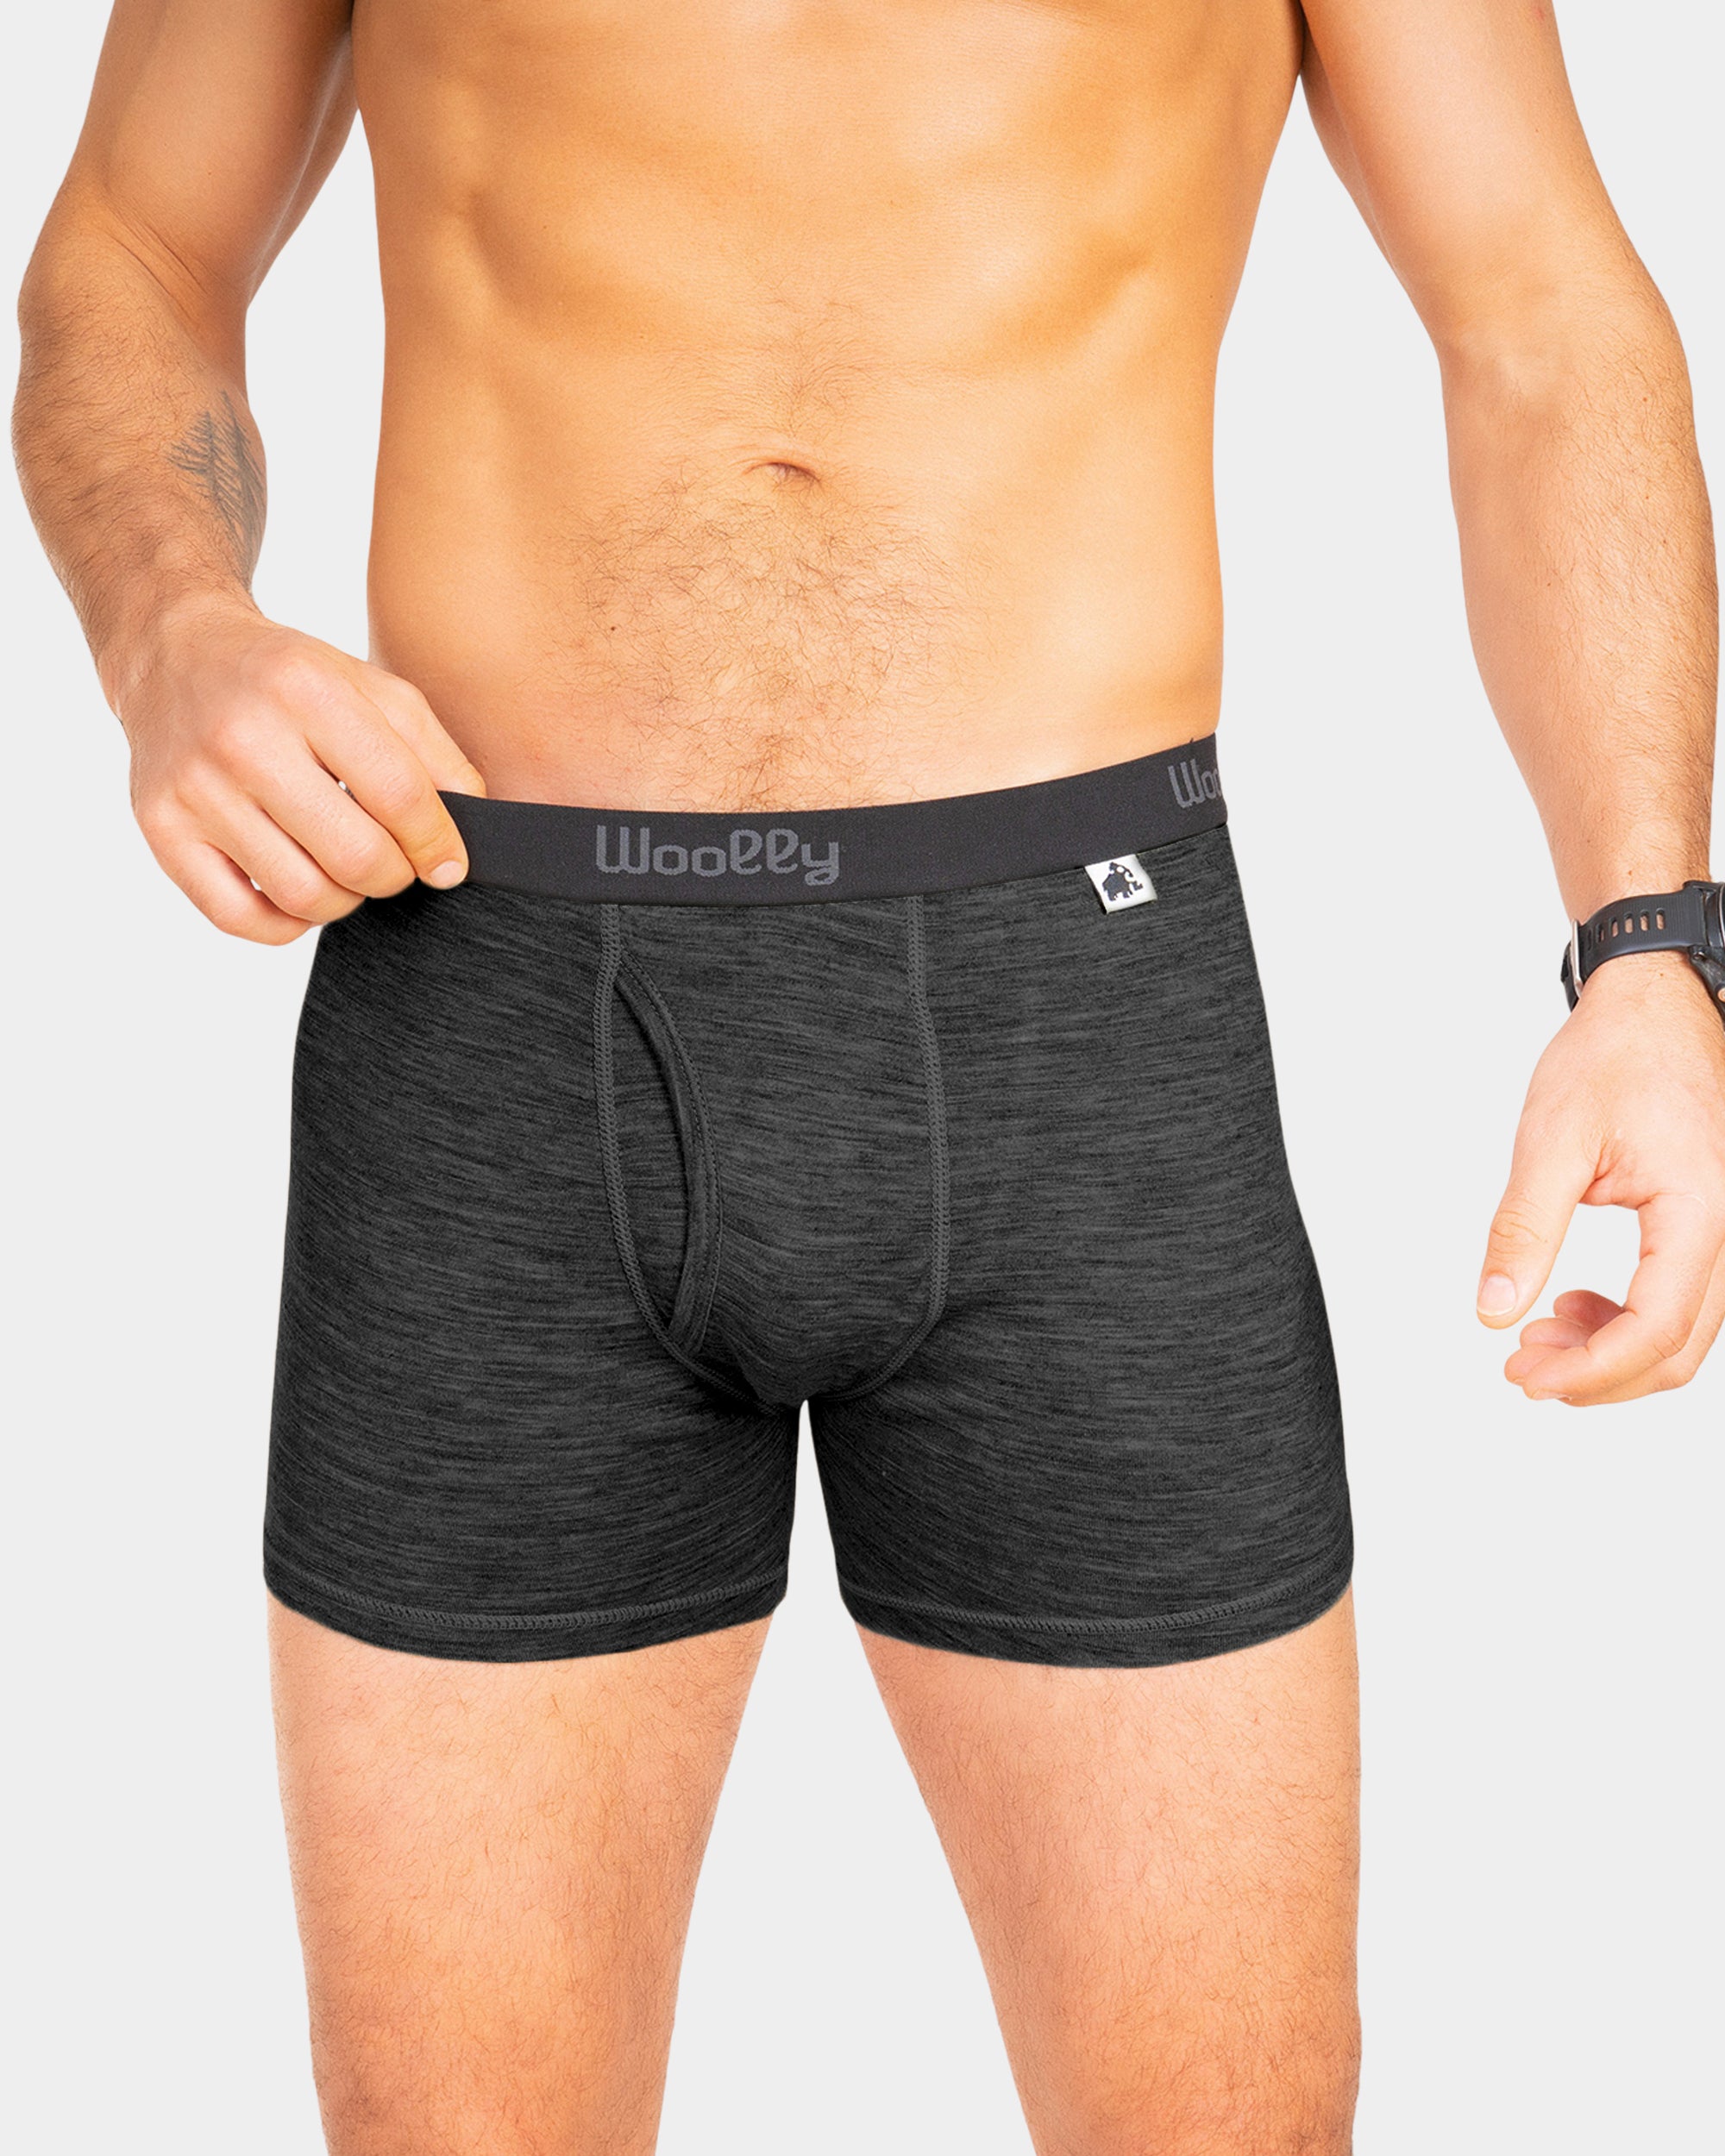  Duluth Underwear - Men's Underwear / Men's Clothing